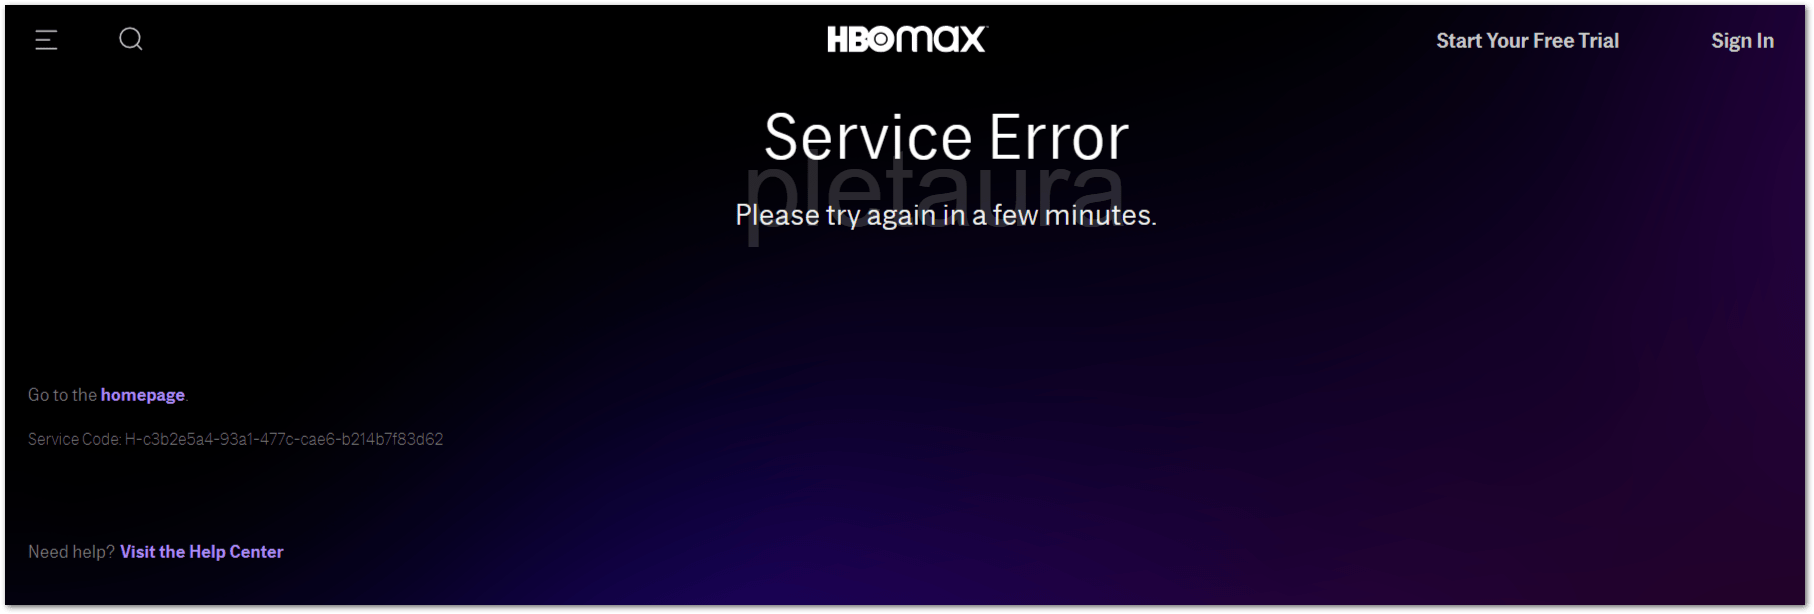 HBO Max Service Error